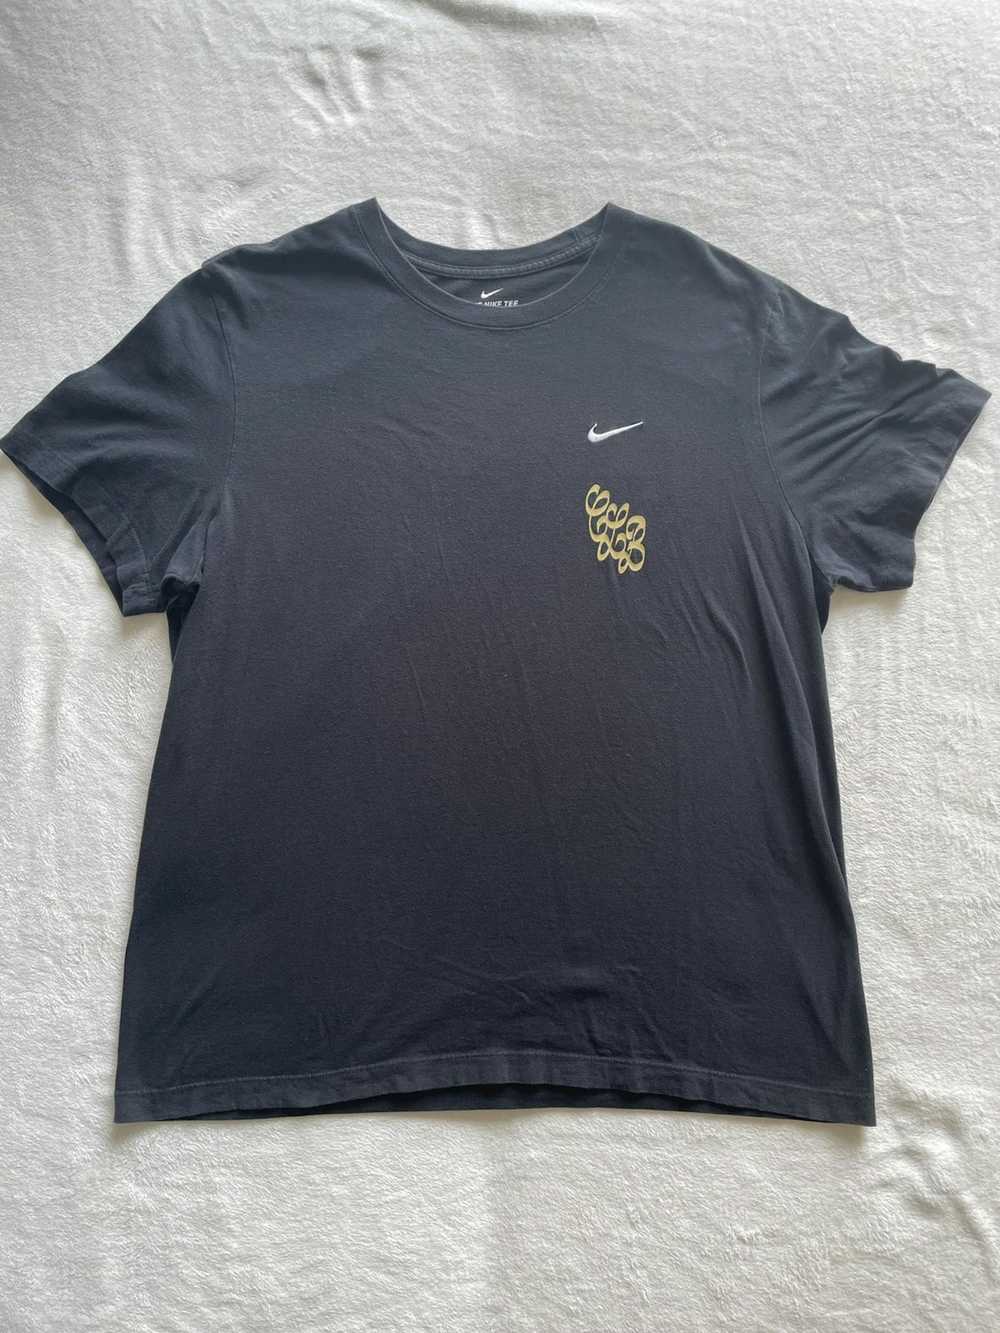 Drake × Nike Drake x Nike CLB Shirt - image 2